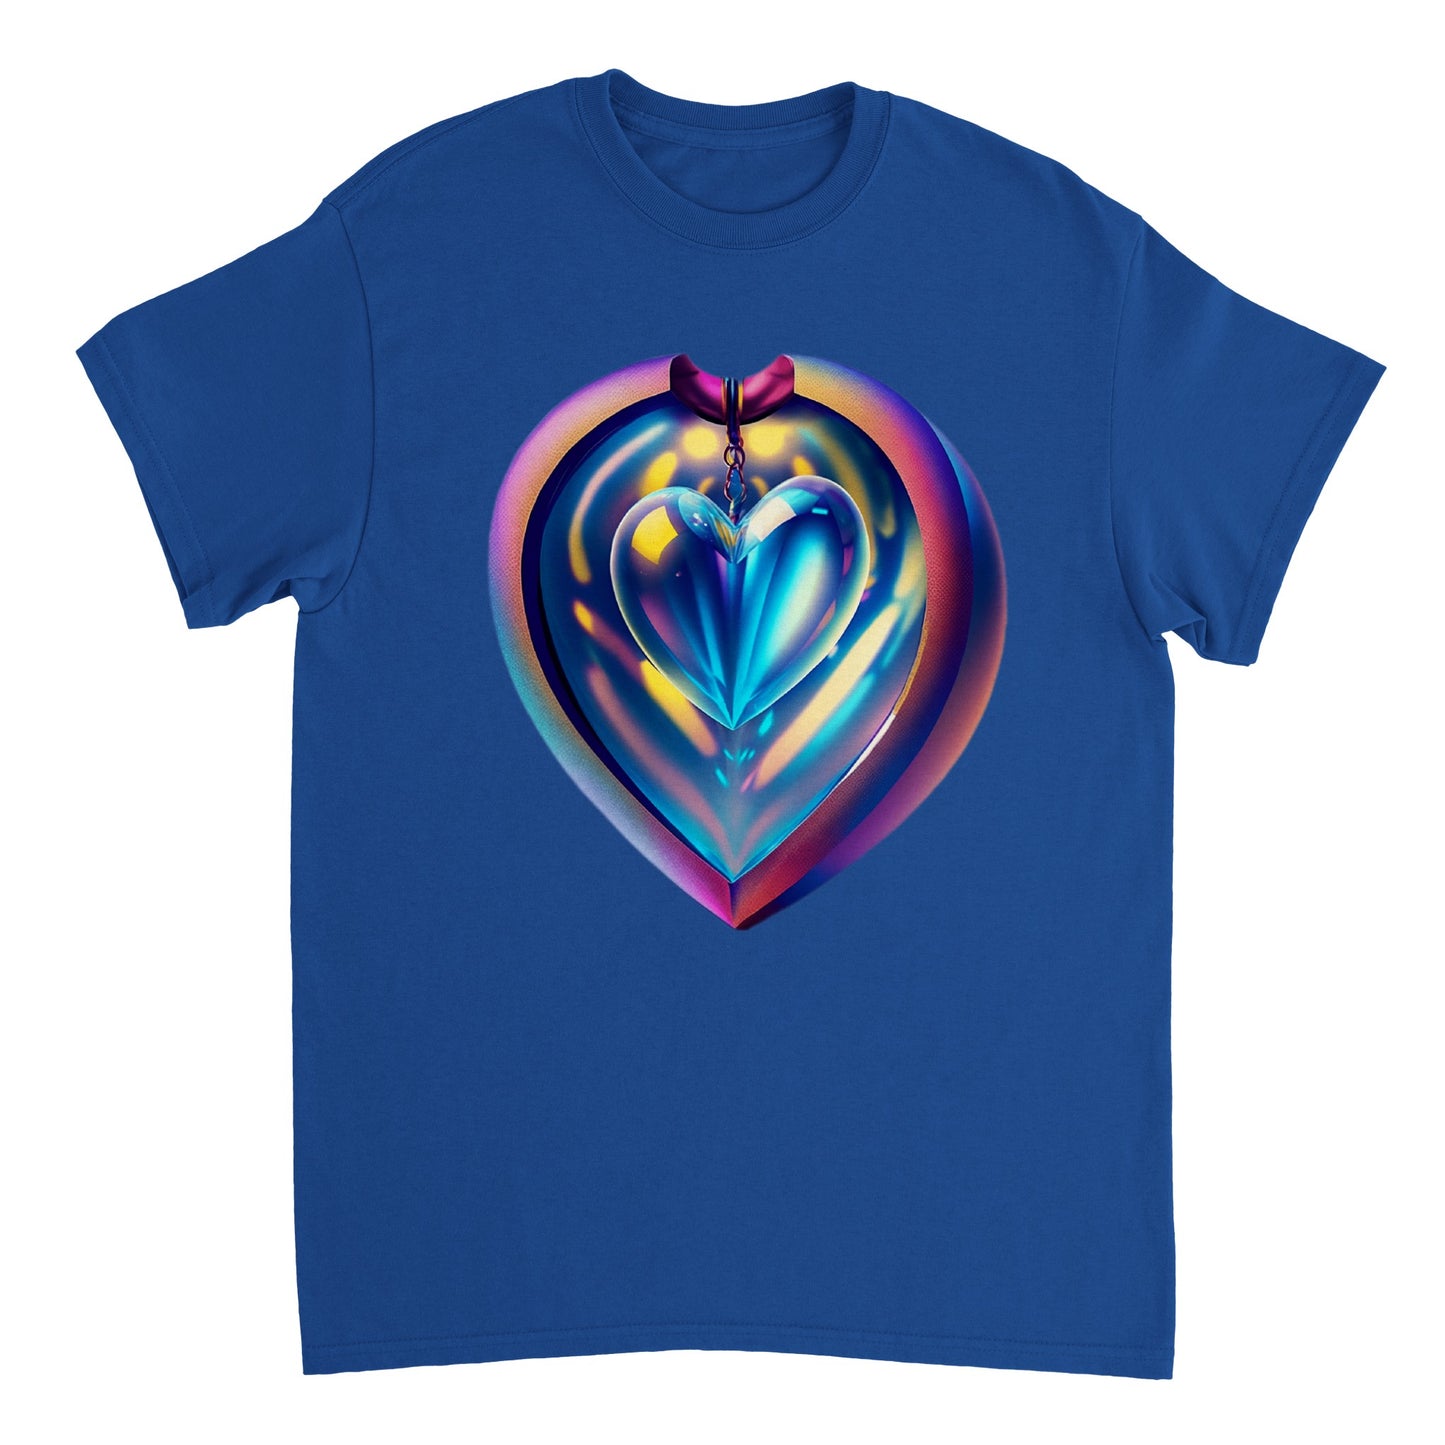 Love Heart - Heavyweight Unisex Crewneck T-shirt 59